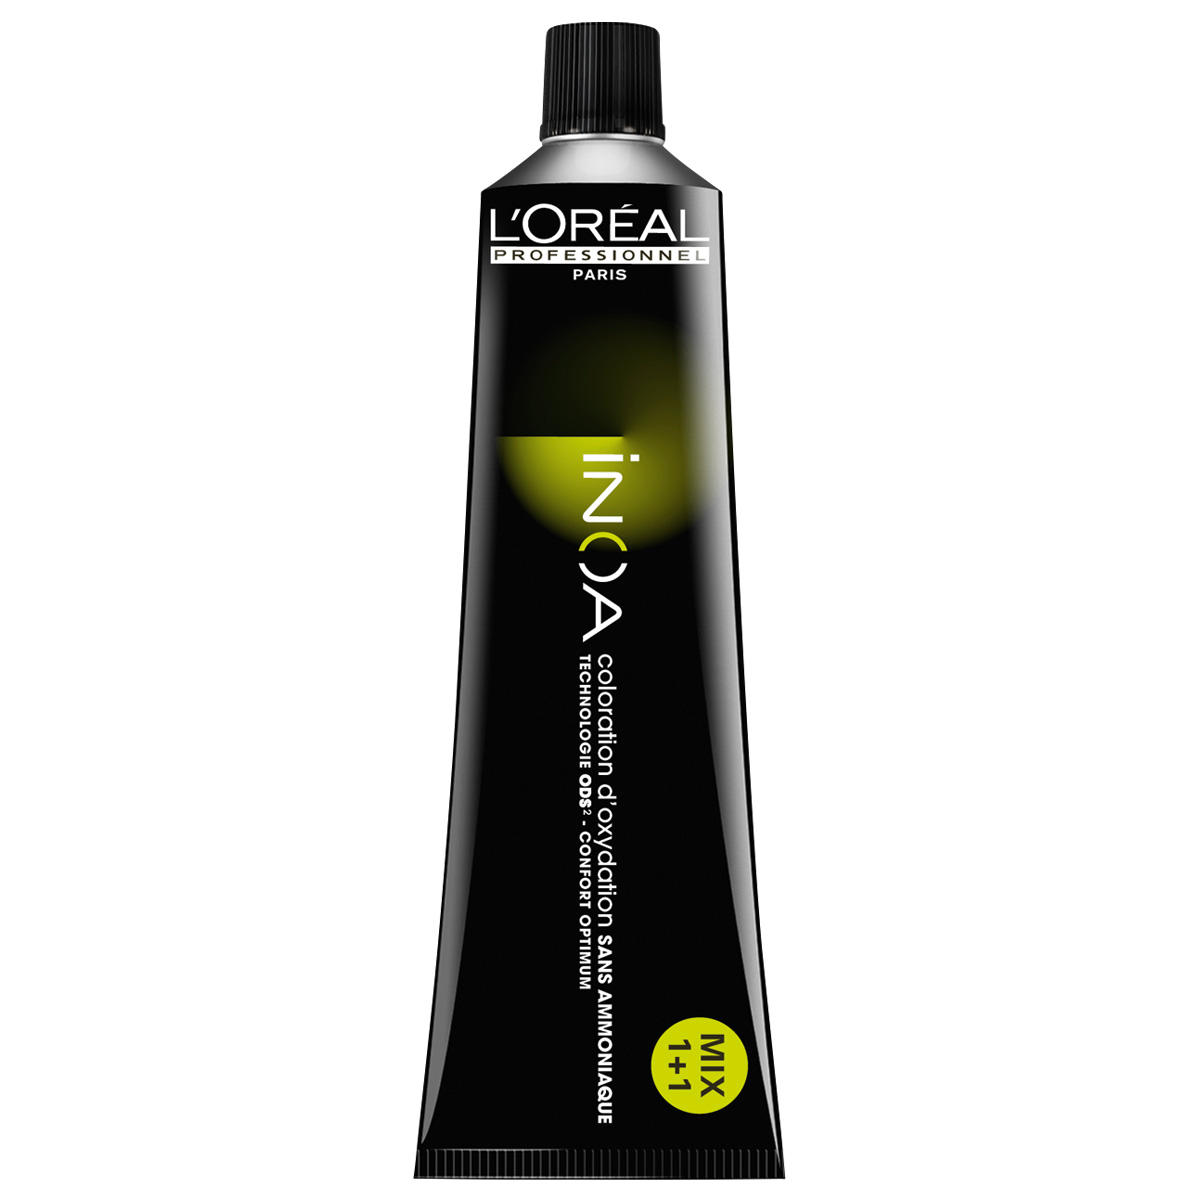 L'Oréal Professionnel Paris Coloration Transparant, tube 60 ml